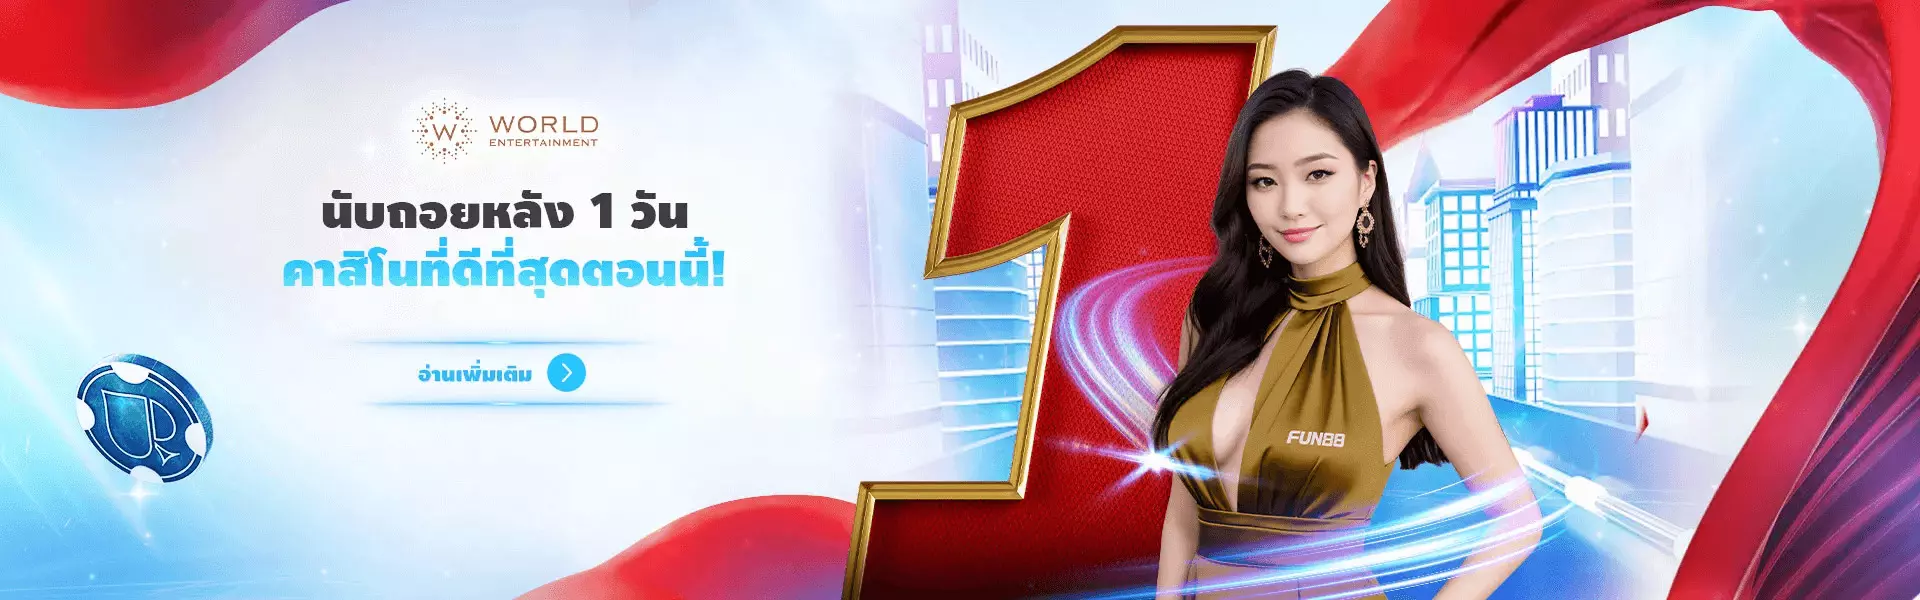 Fun88 คาสิโนออนไลน์ที่ดีที่สุดในประเทศไทย!